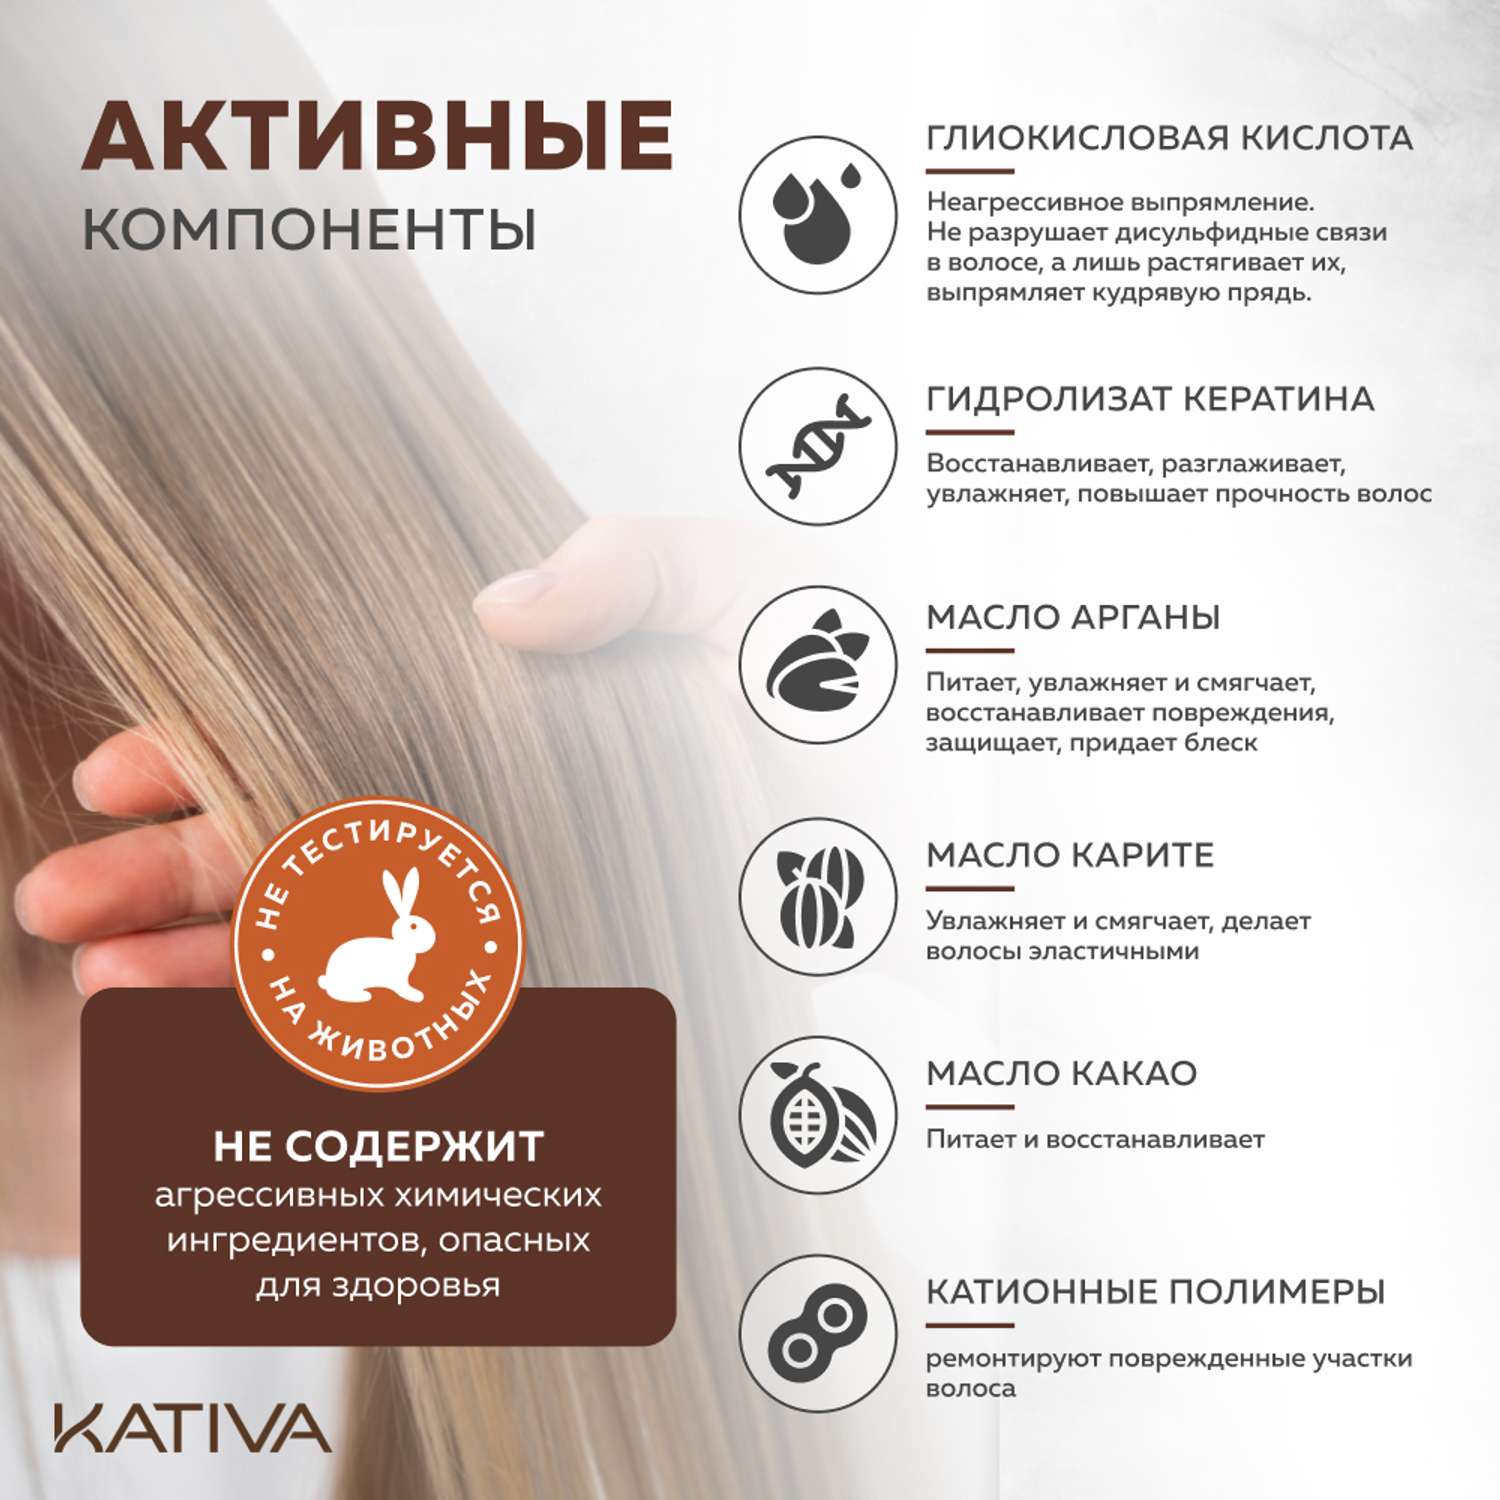 Набор для выпрямления Kativa кератинового и восстановления волос с маслом Арганы - фото 4